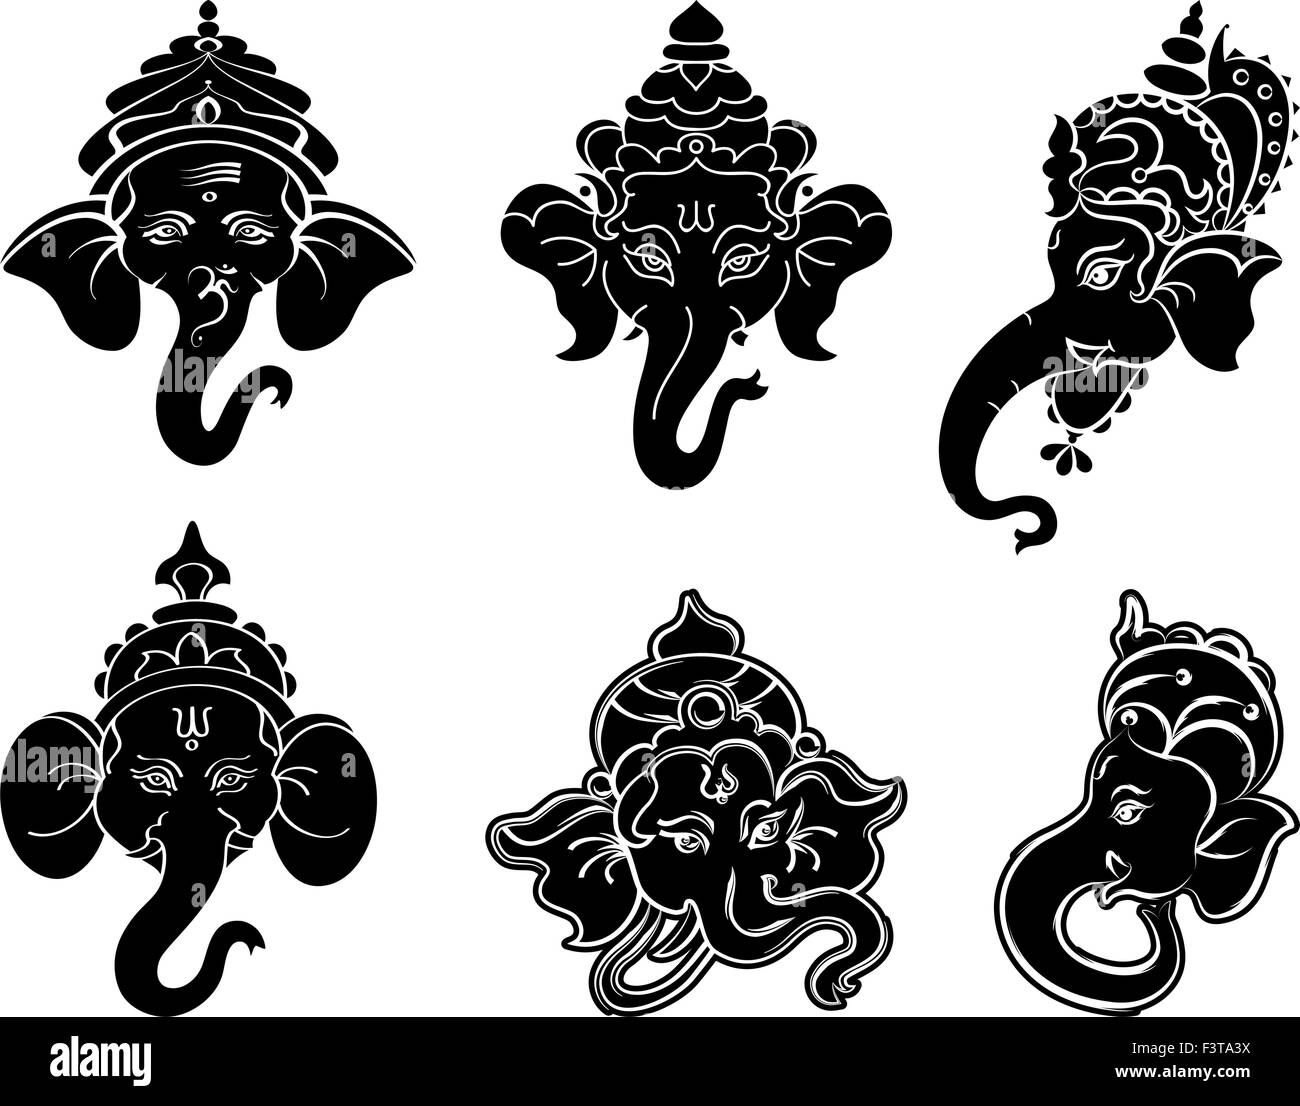 Ganesha Collection Set Vector Art Stock Vector